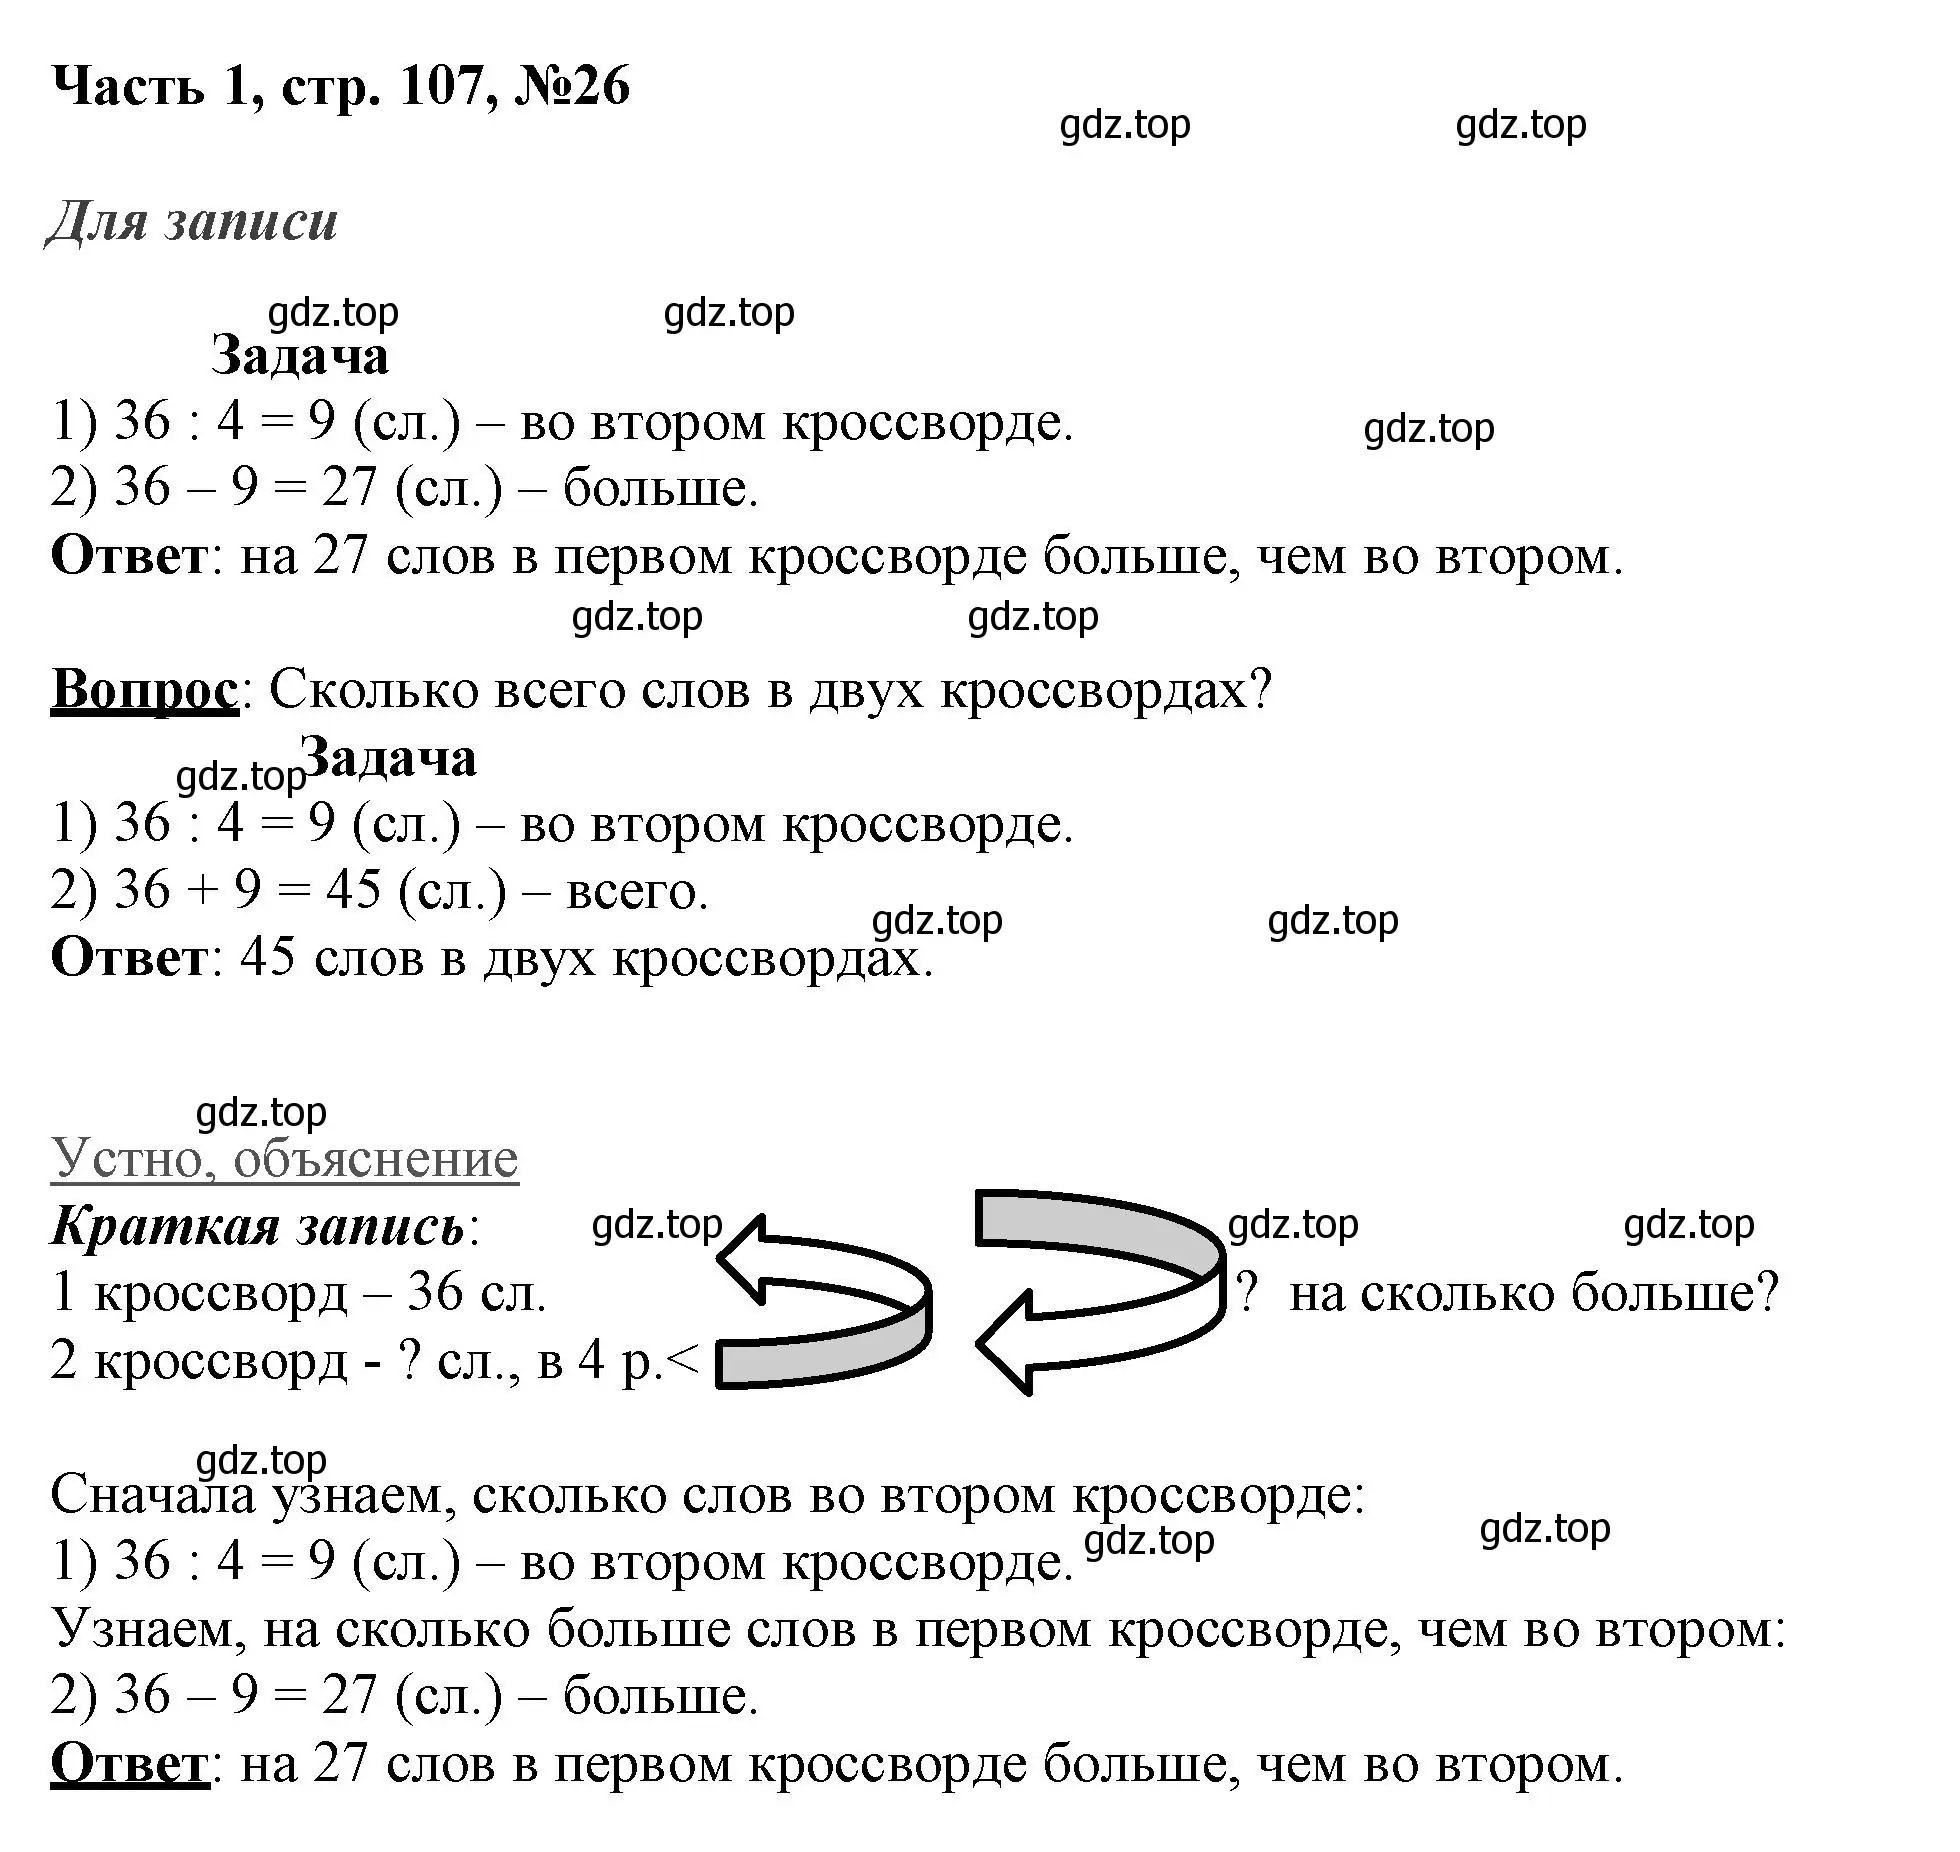 Решение номер 26 (страница 107) гдз по математике 3 класс Моро, Бантова, учебник 1 часть